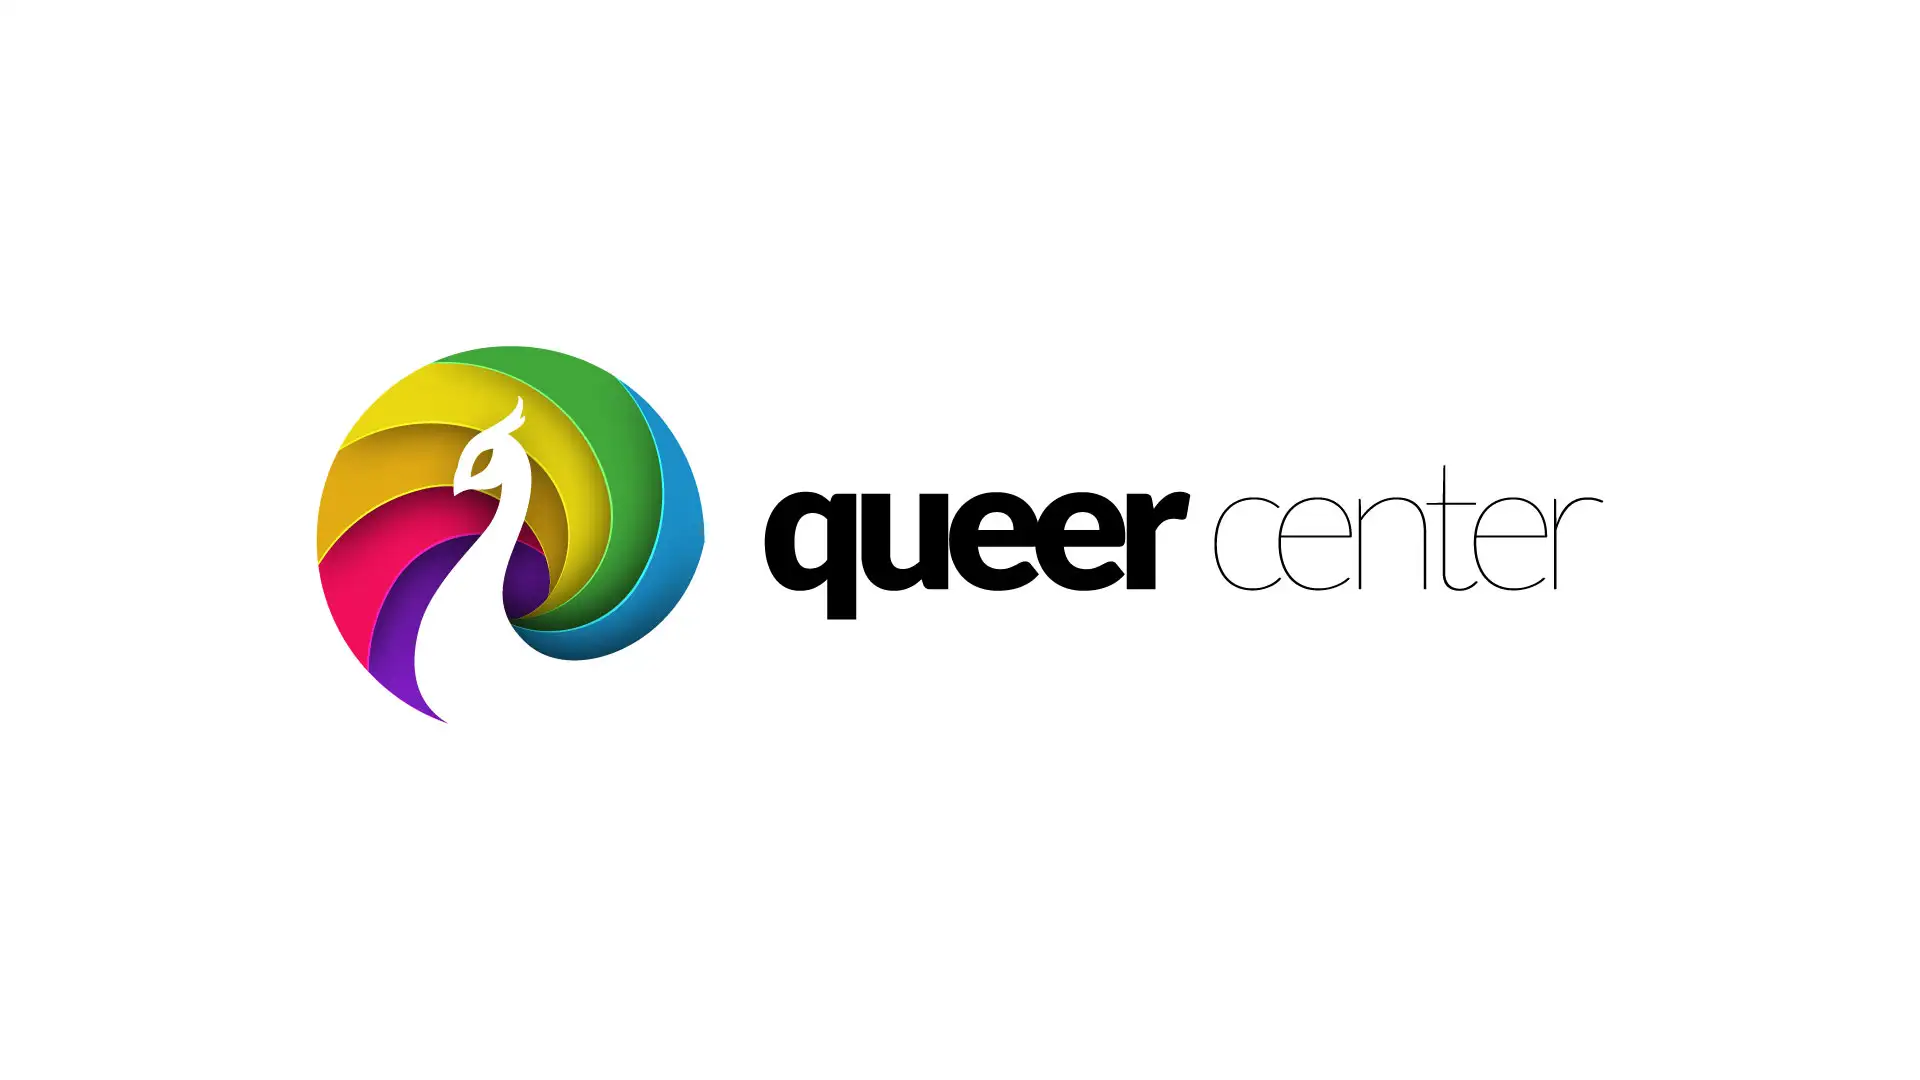 Queer Center logo branding design by Dusty Drake